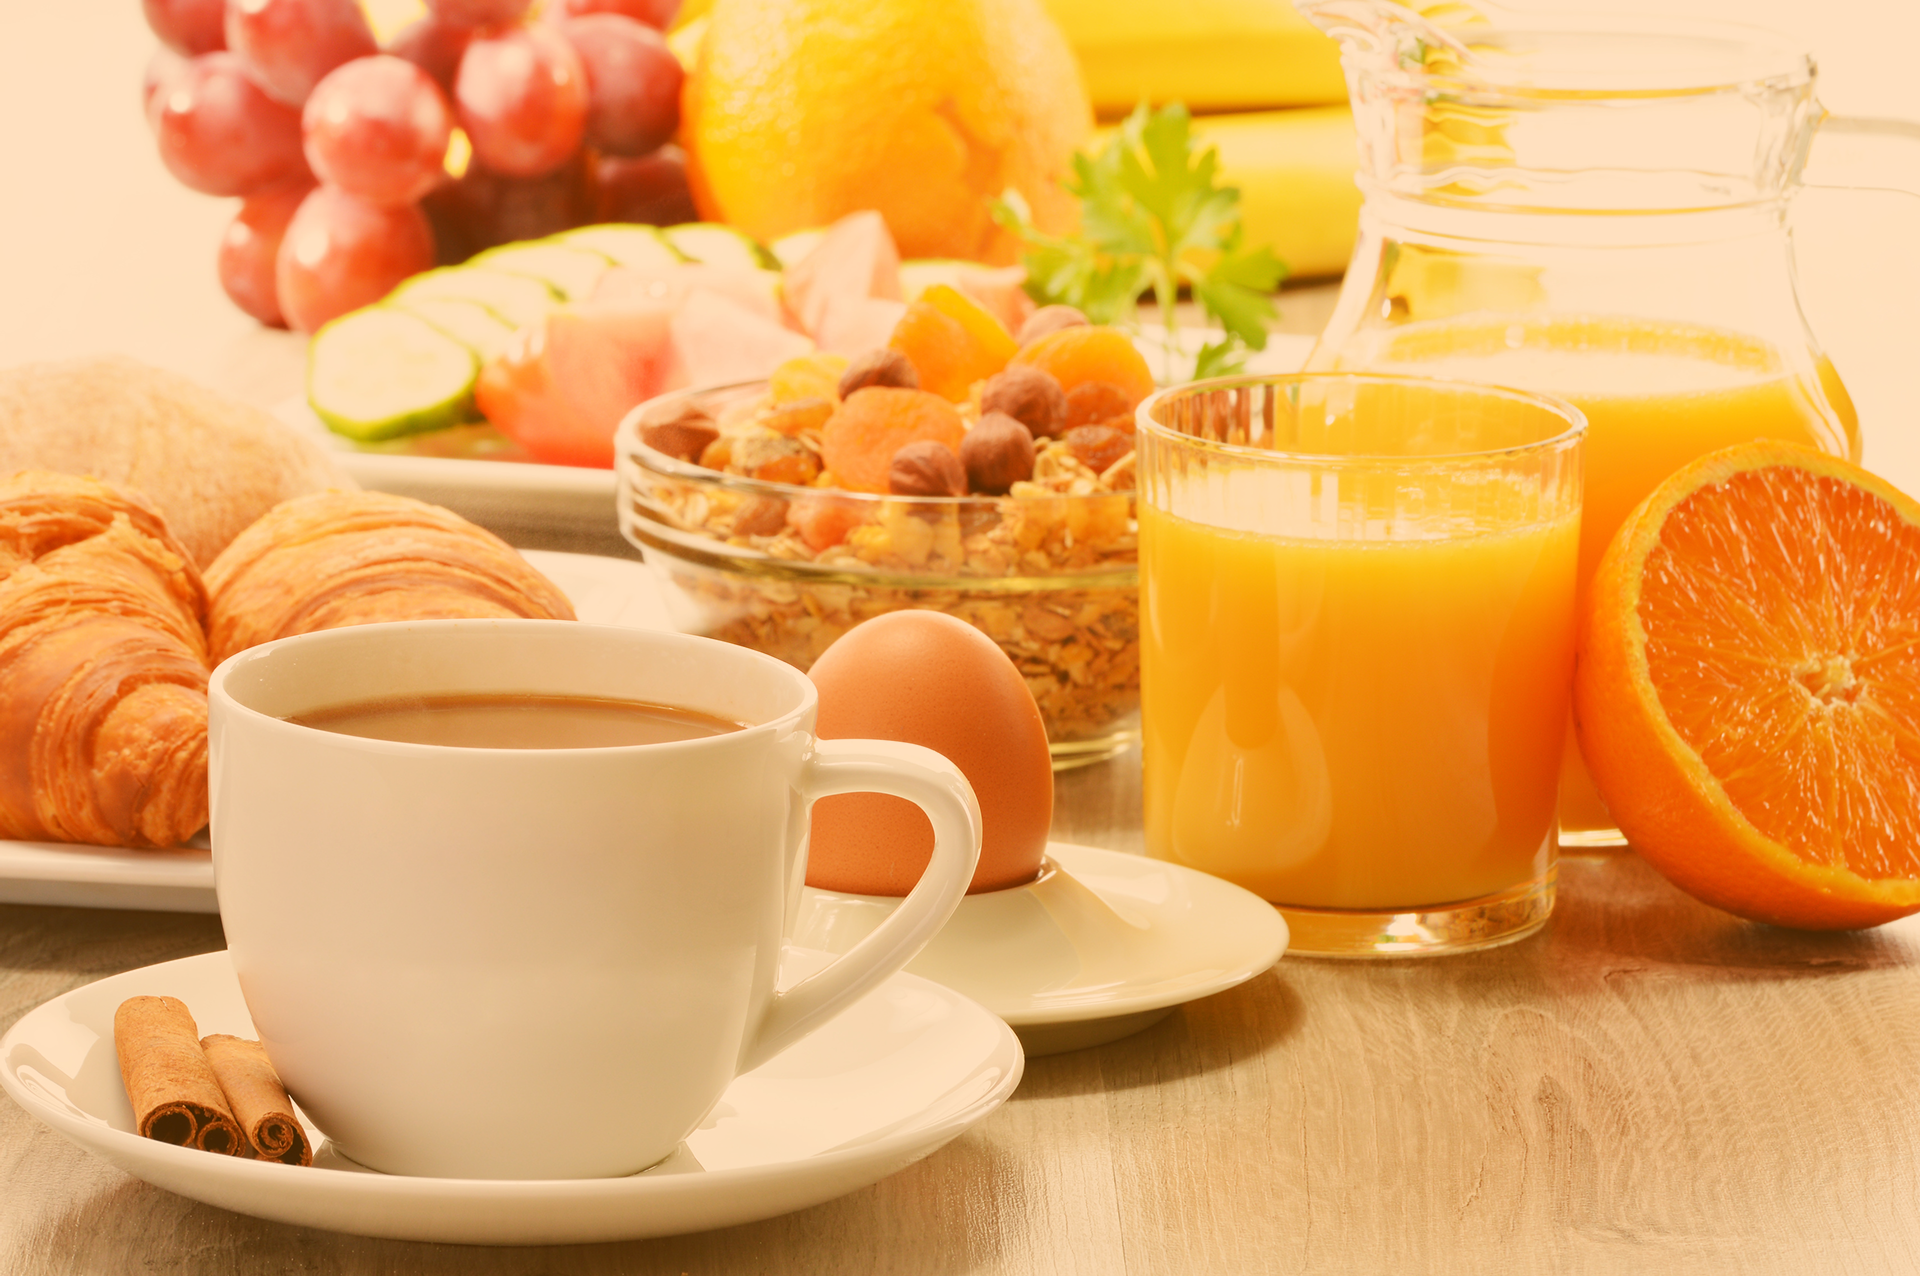 Lecker gedeckter Frühstückstisch mit Croissants, frischem o-Saft, Eiern, Müsli mit Früchten und Nüssen, ebenso eine Tasse Kaffee